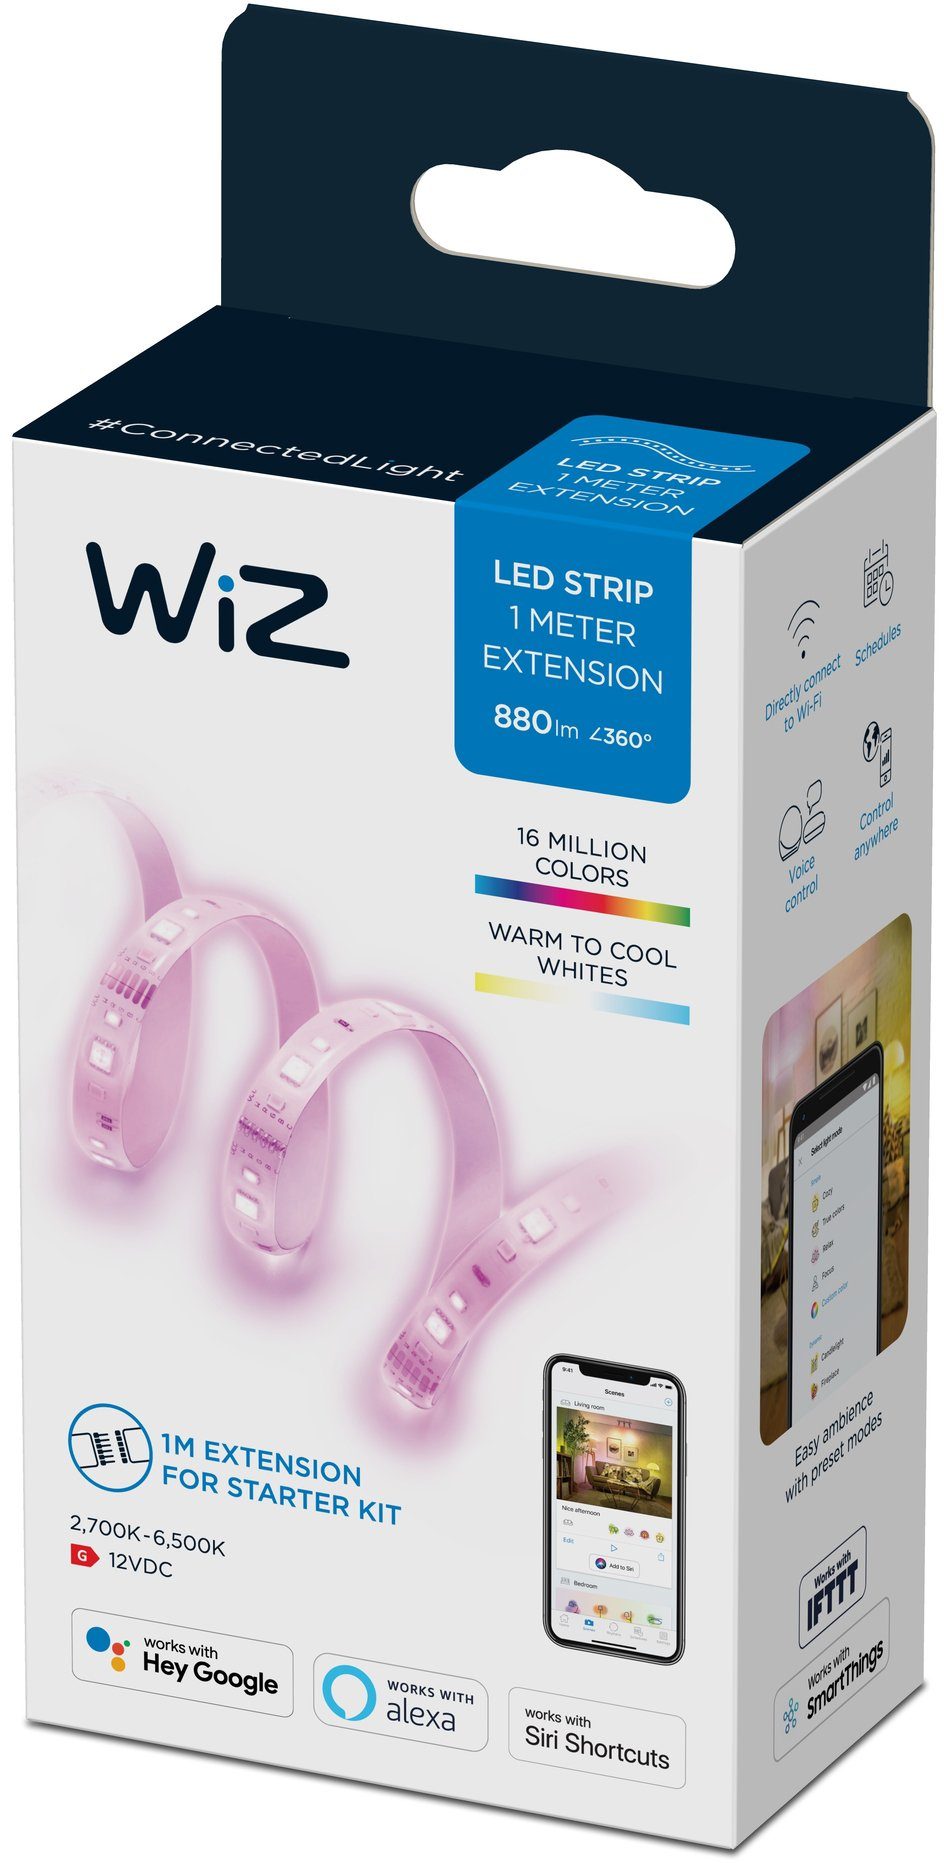 hochwertig und günstig WiZ LED Stripe White&Color Lightstrip Lichterlebnis 880lm und flexibles Extension für vielfältiges Zuhause Ihr Einzelpack, 1m